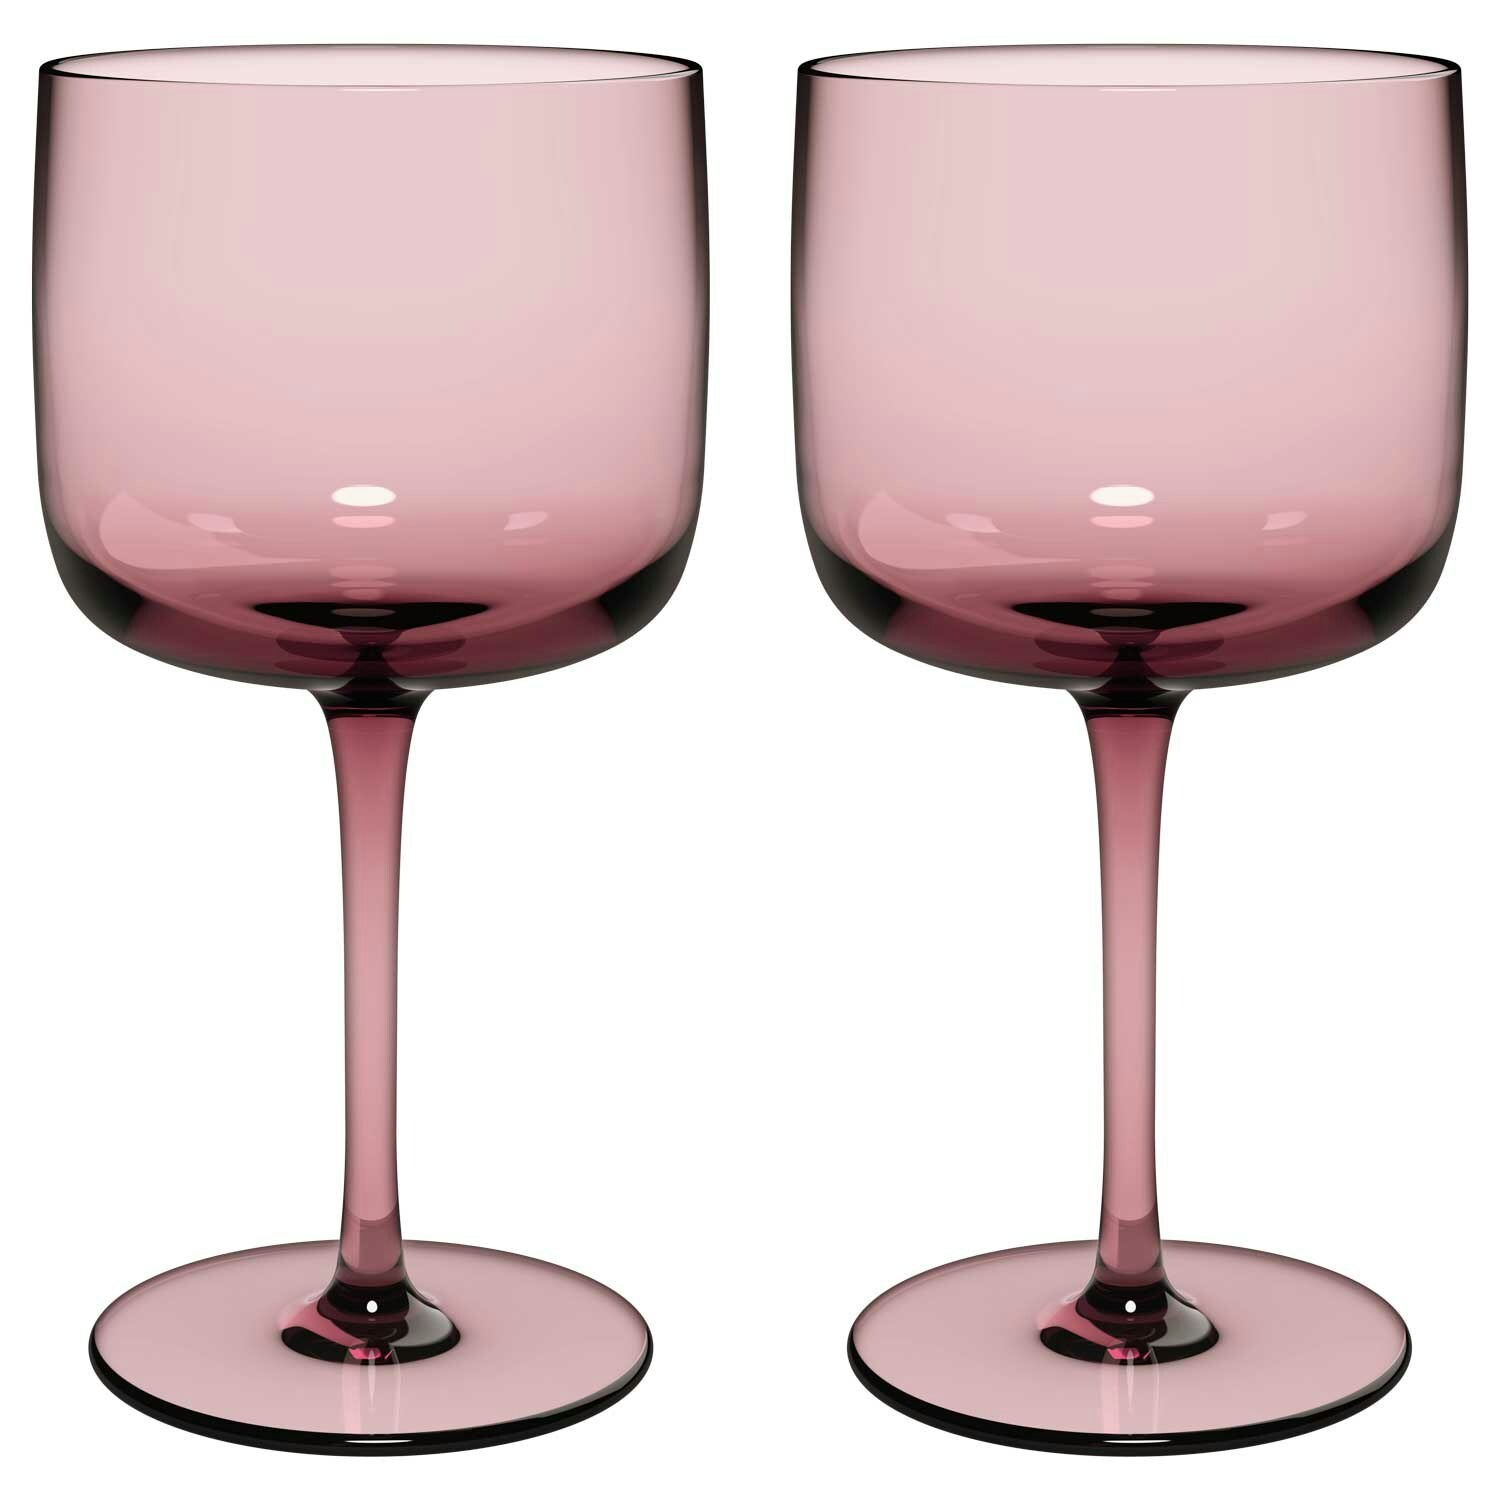 https://royaldesign.co.uk/image/6/villeroy-boch-like-wine-glasses-2-pack-15